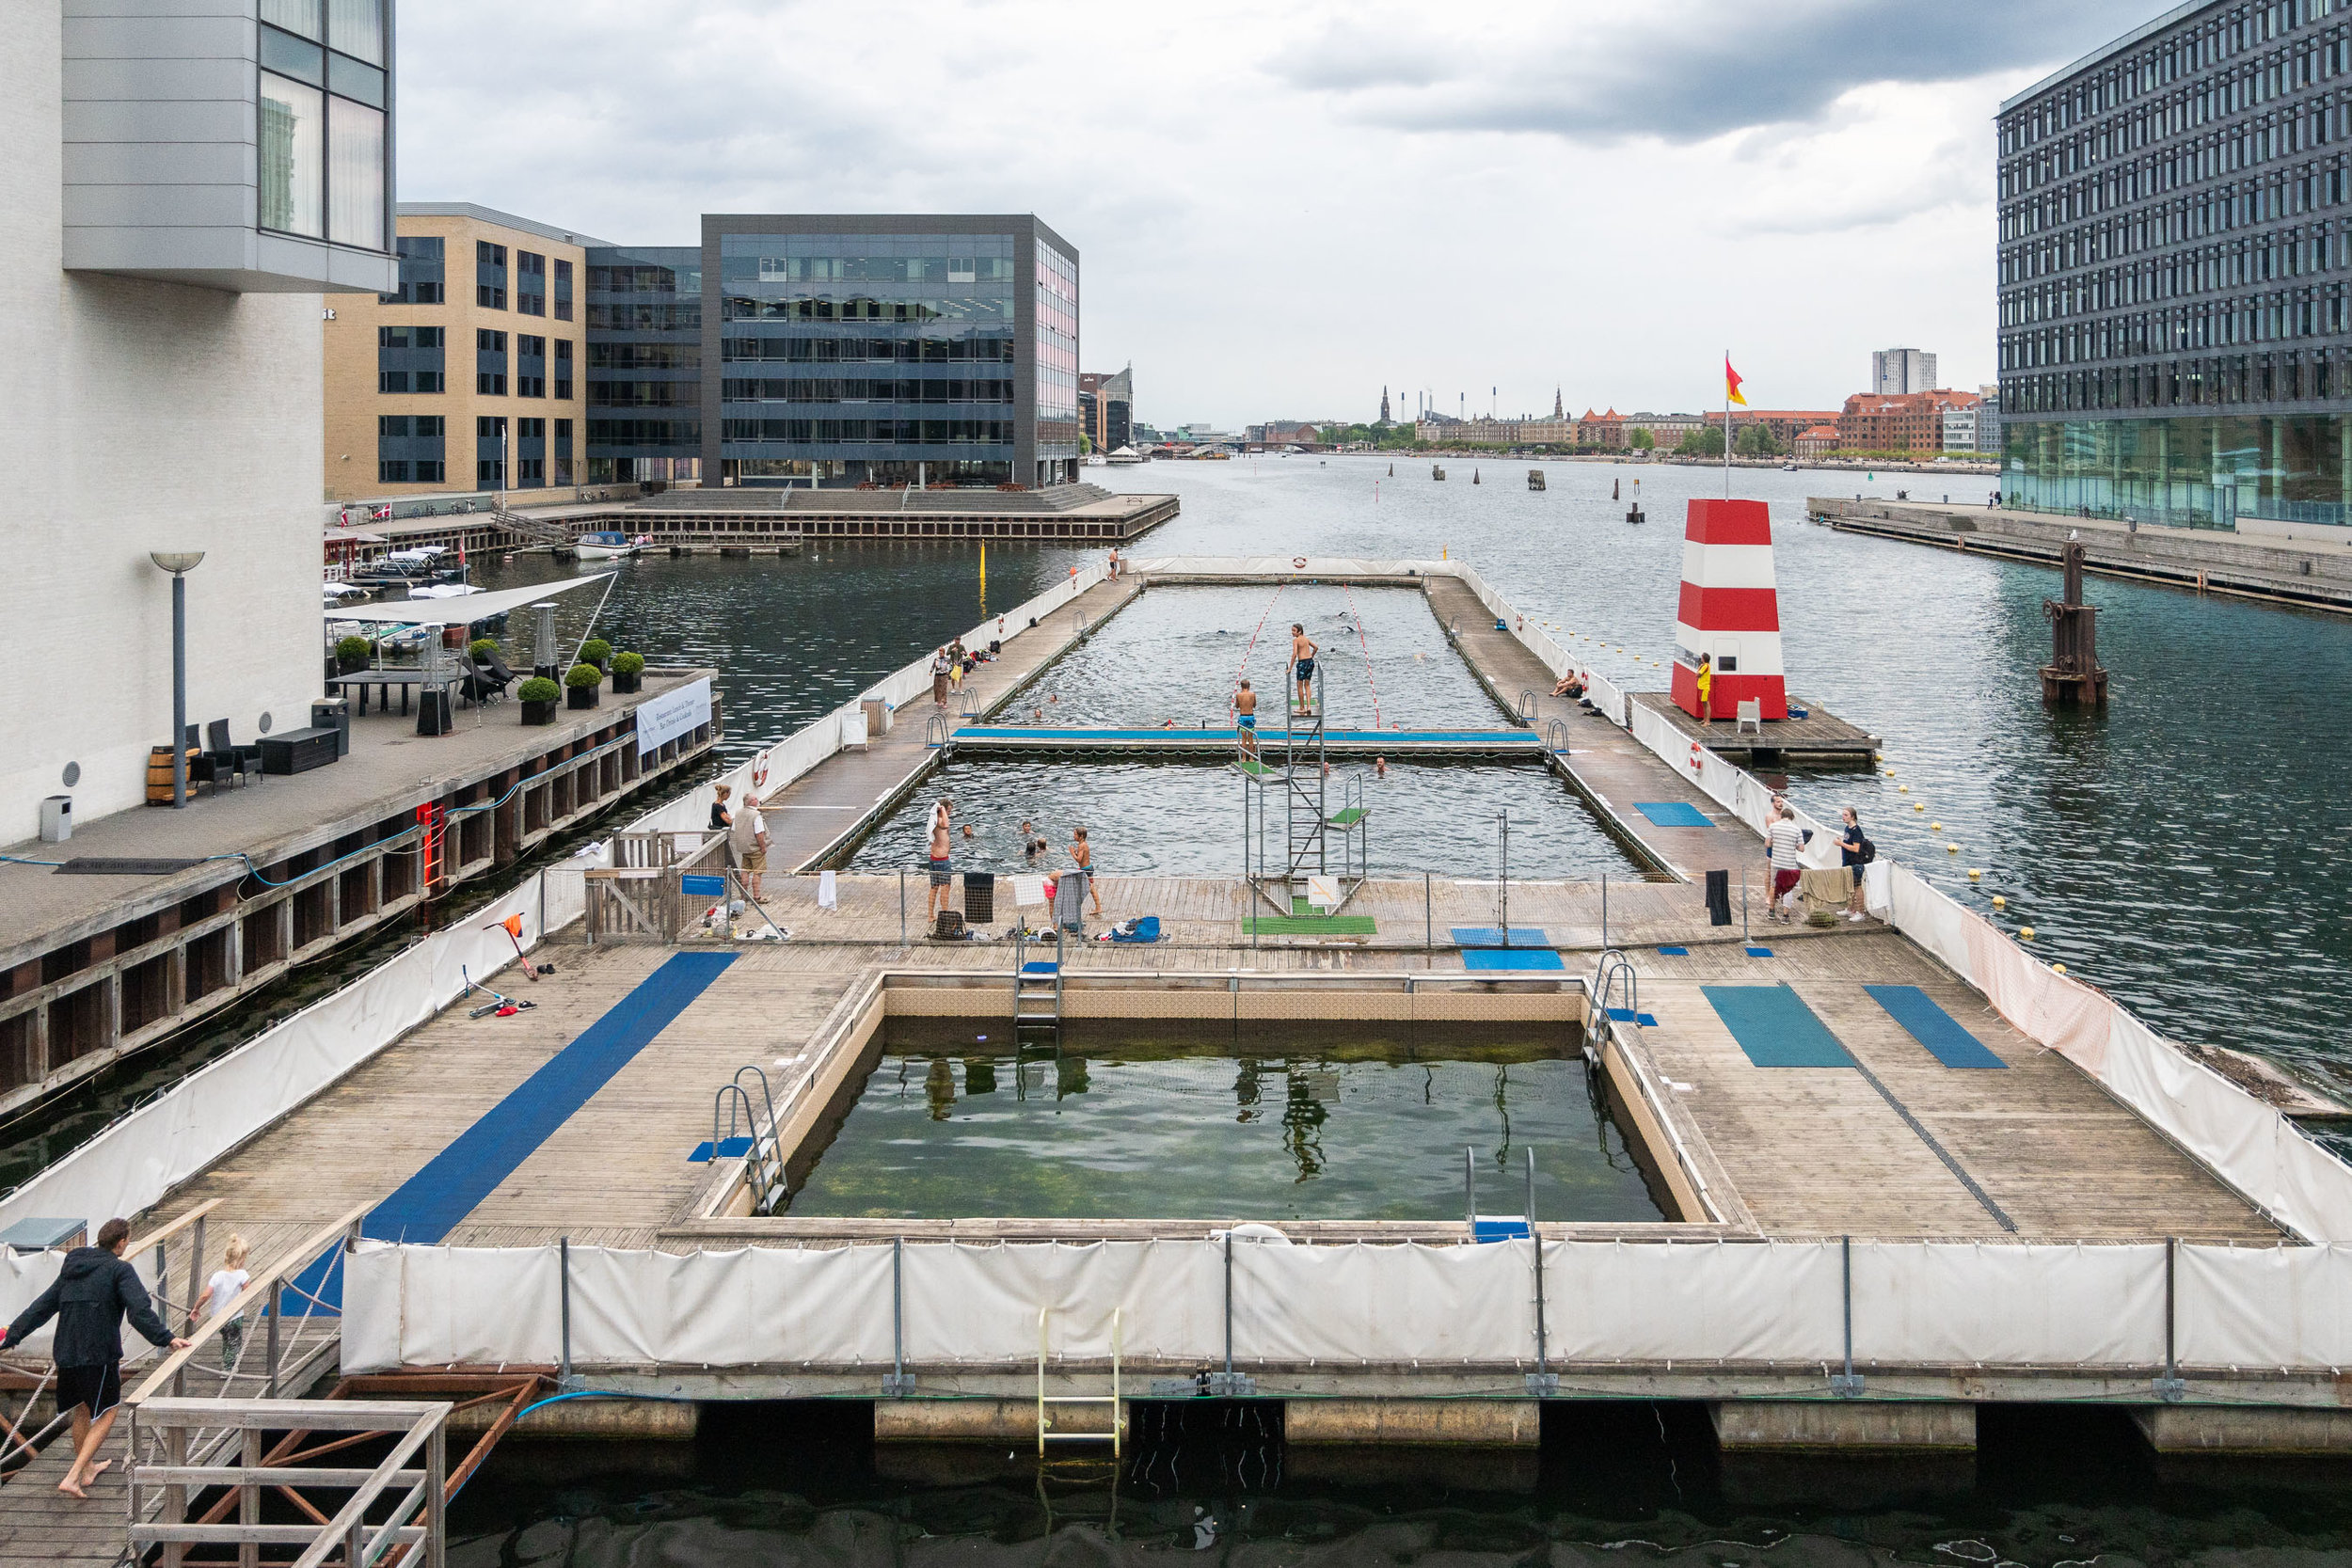  Havnebadet Fisketorvet, Copenhagen 